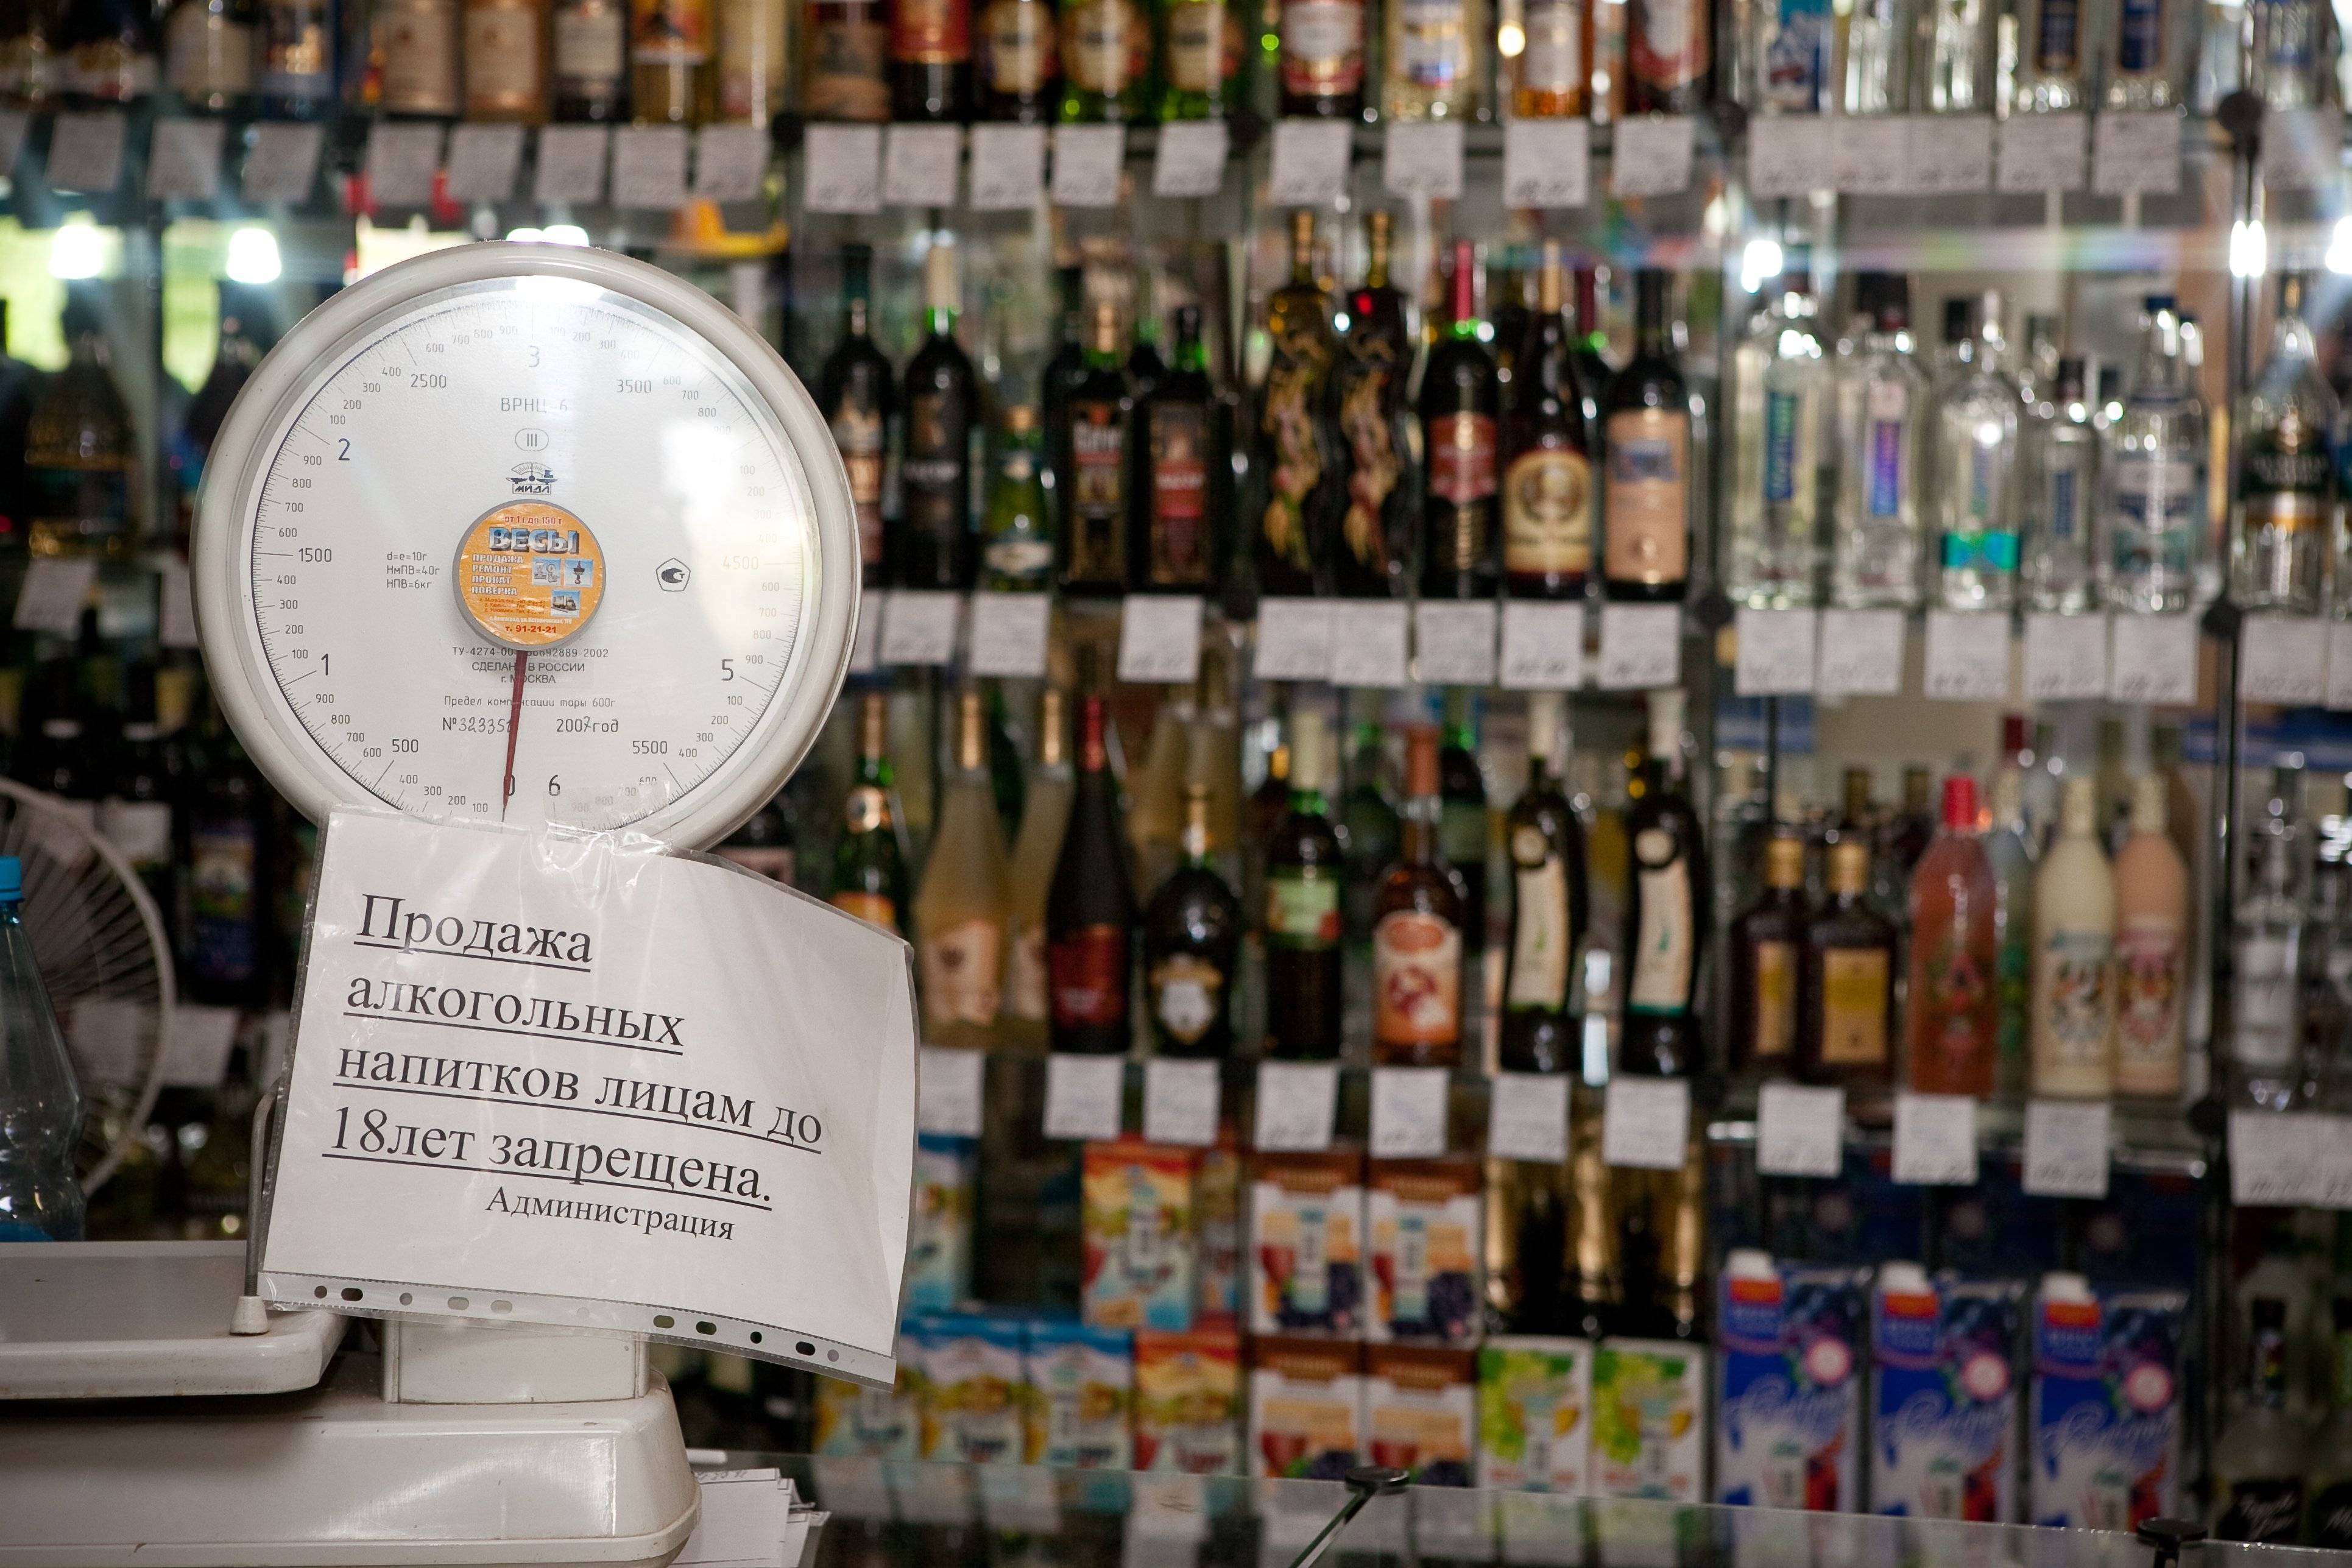 Со скольки лет продают алкоголь в москве: с какого возраста разрешена продажа алкогольных напитков в мск 18 или 21